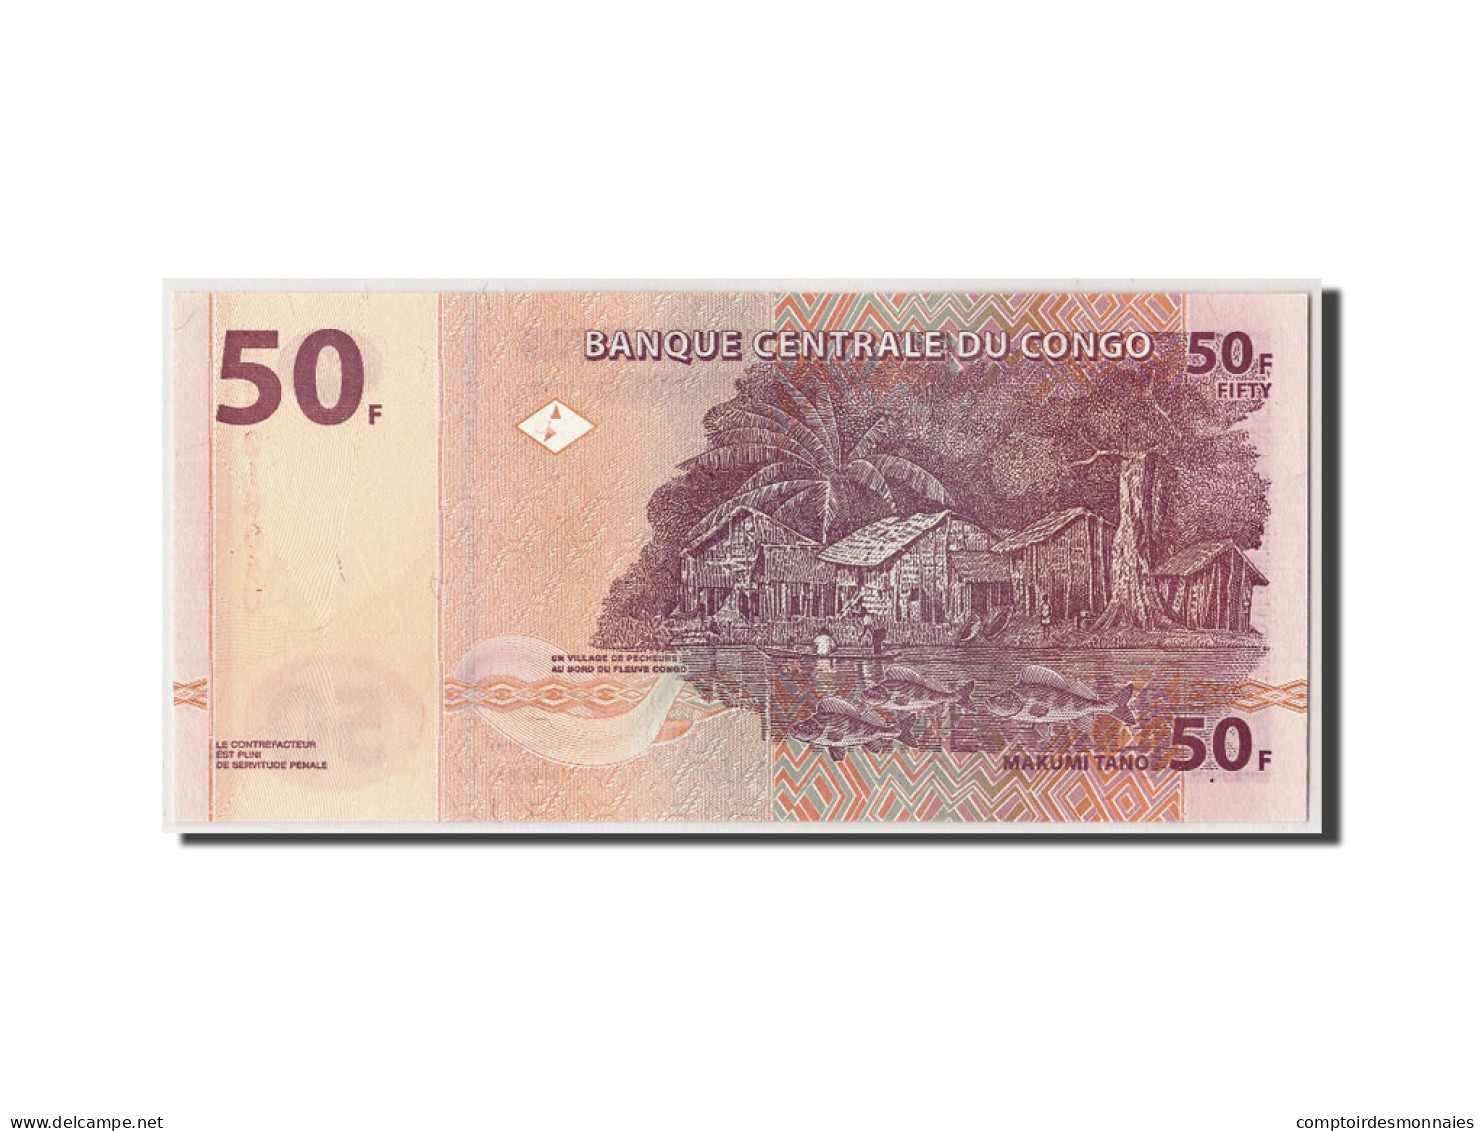 Billet, Congo Democratic Republic, 50 Francs, 2000, 2000-01-04, KM:91a, NEUF - République Démocratique Du Congo & Zaïre